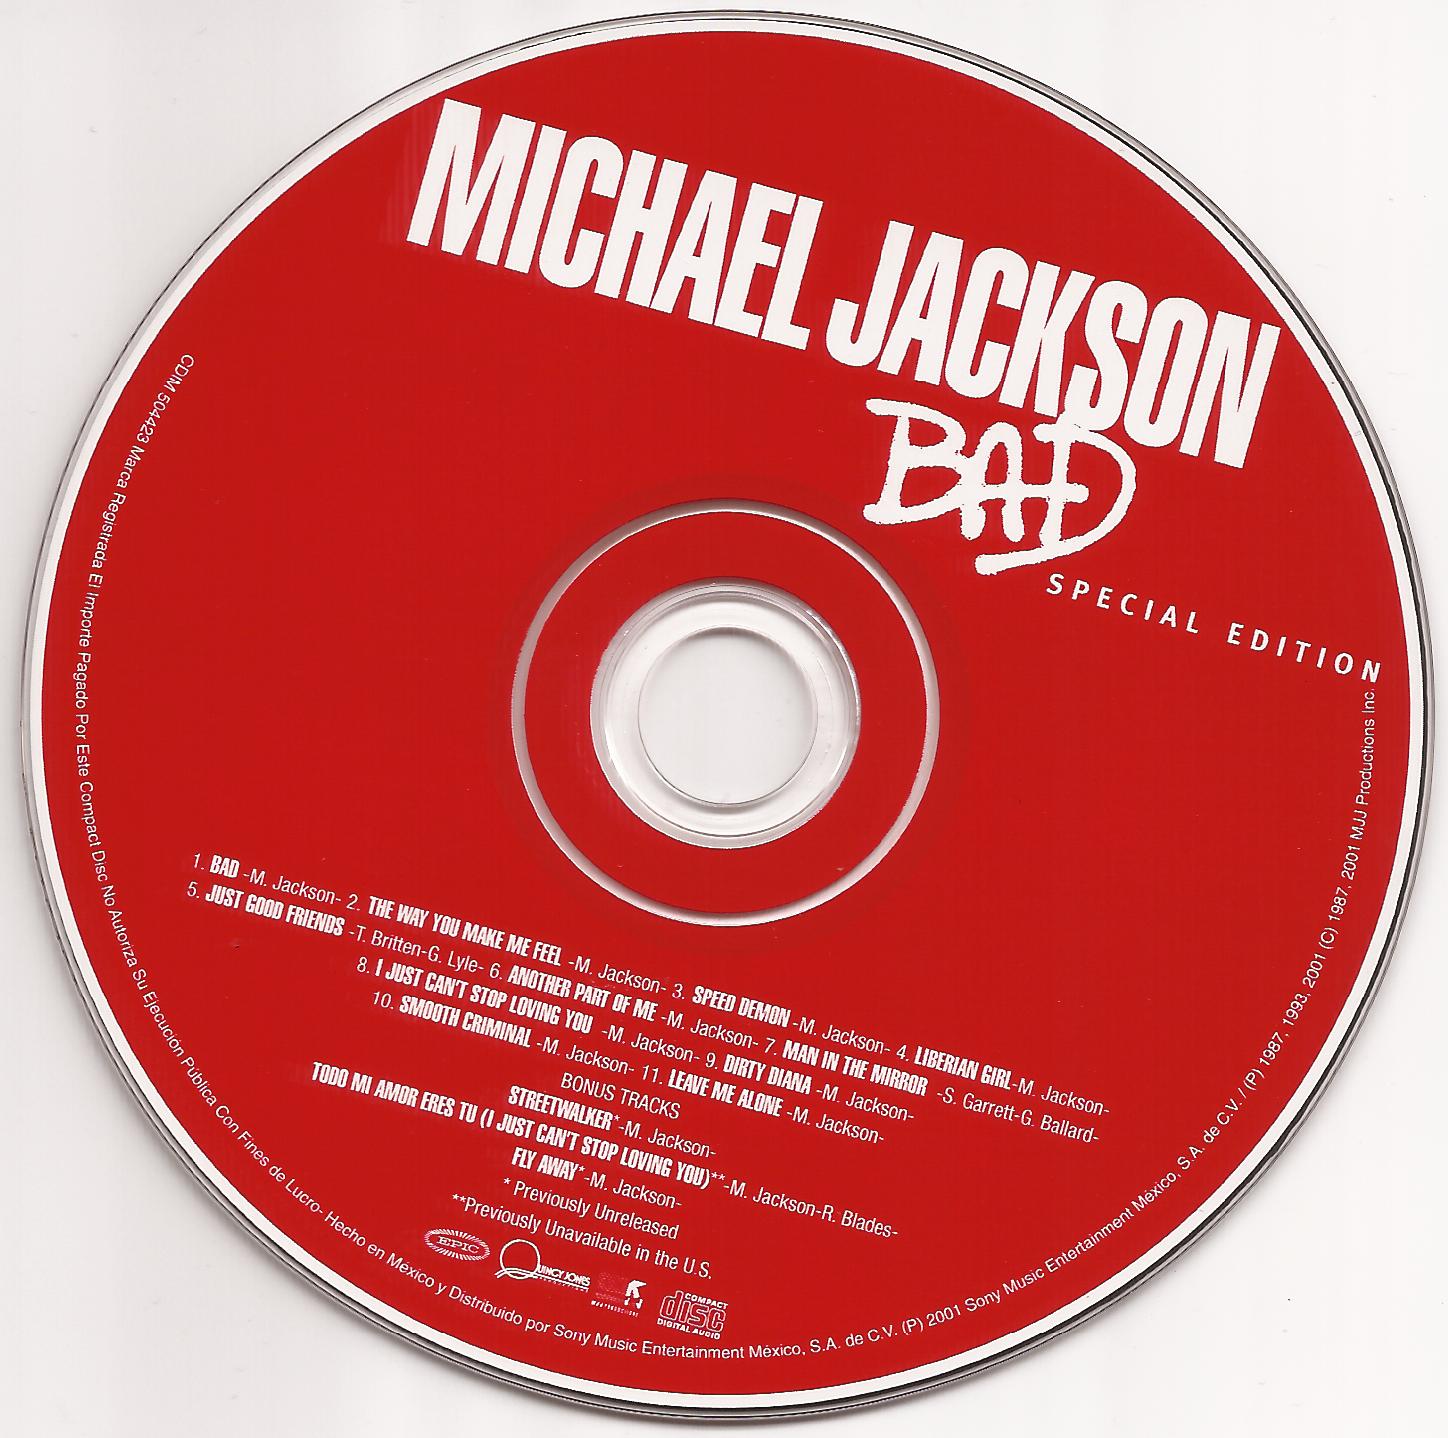 http://2.bp.blogspot.com/-NQRCqkUZv5E/TqYz8Lt63nI/AAAAAAAAAmQ/Q96K8jKwZs0/s1600/Cd+Michael+Jackson+Bad.jpg